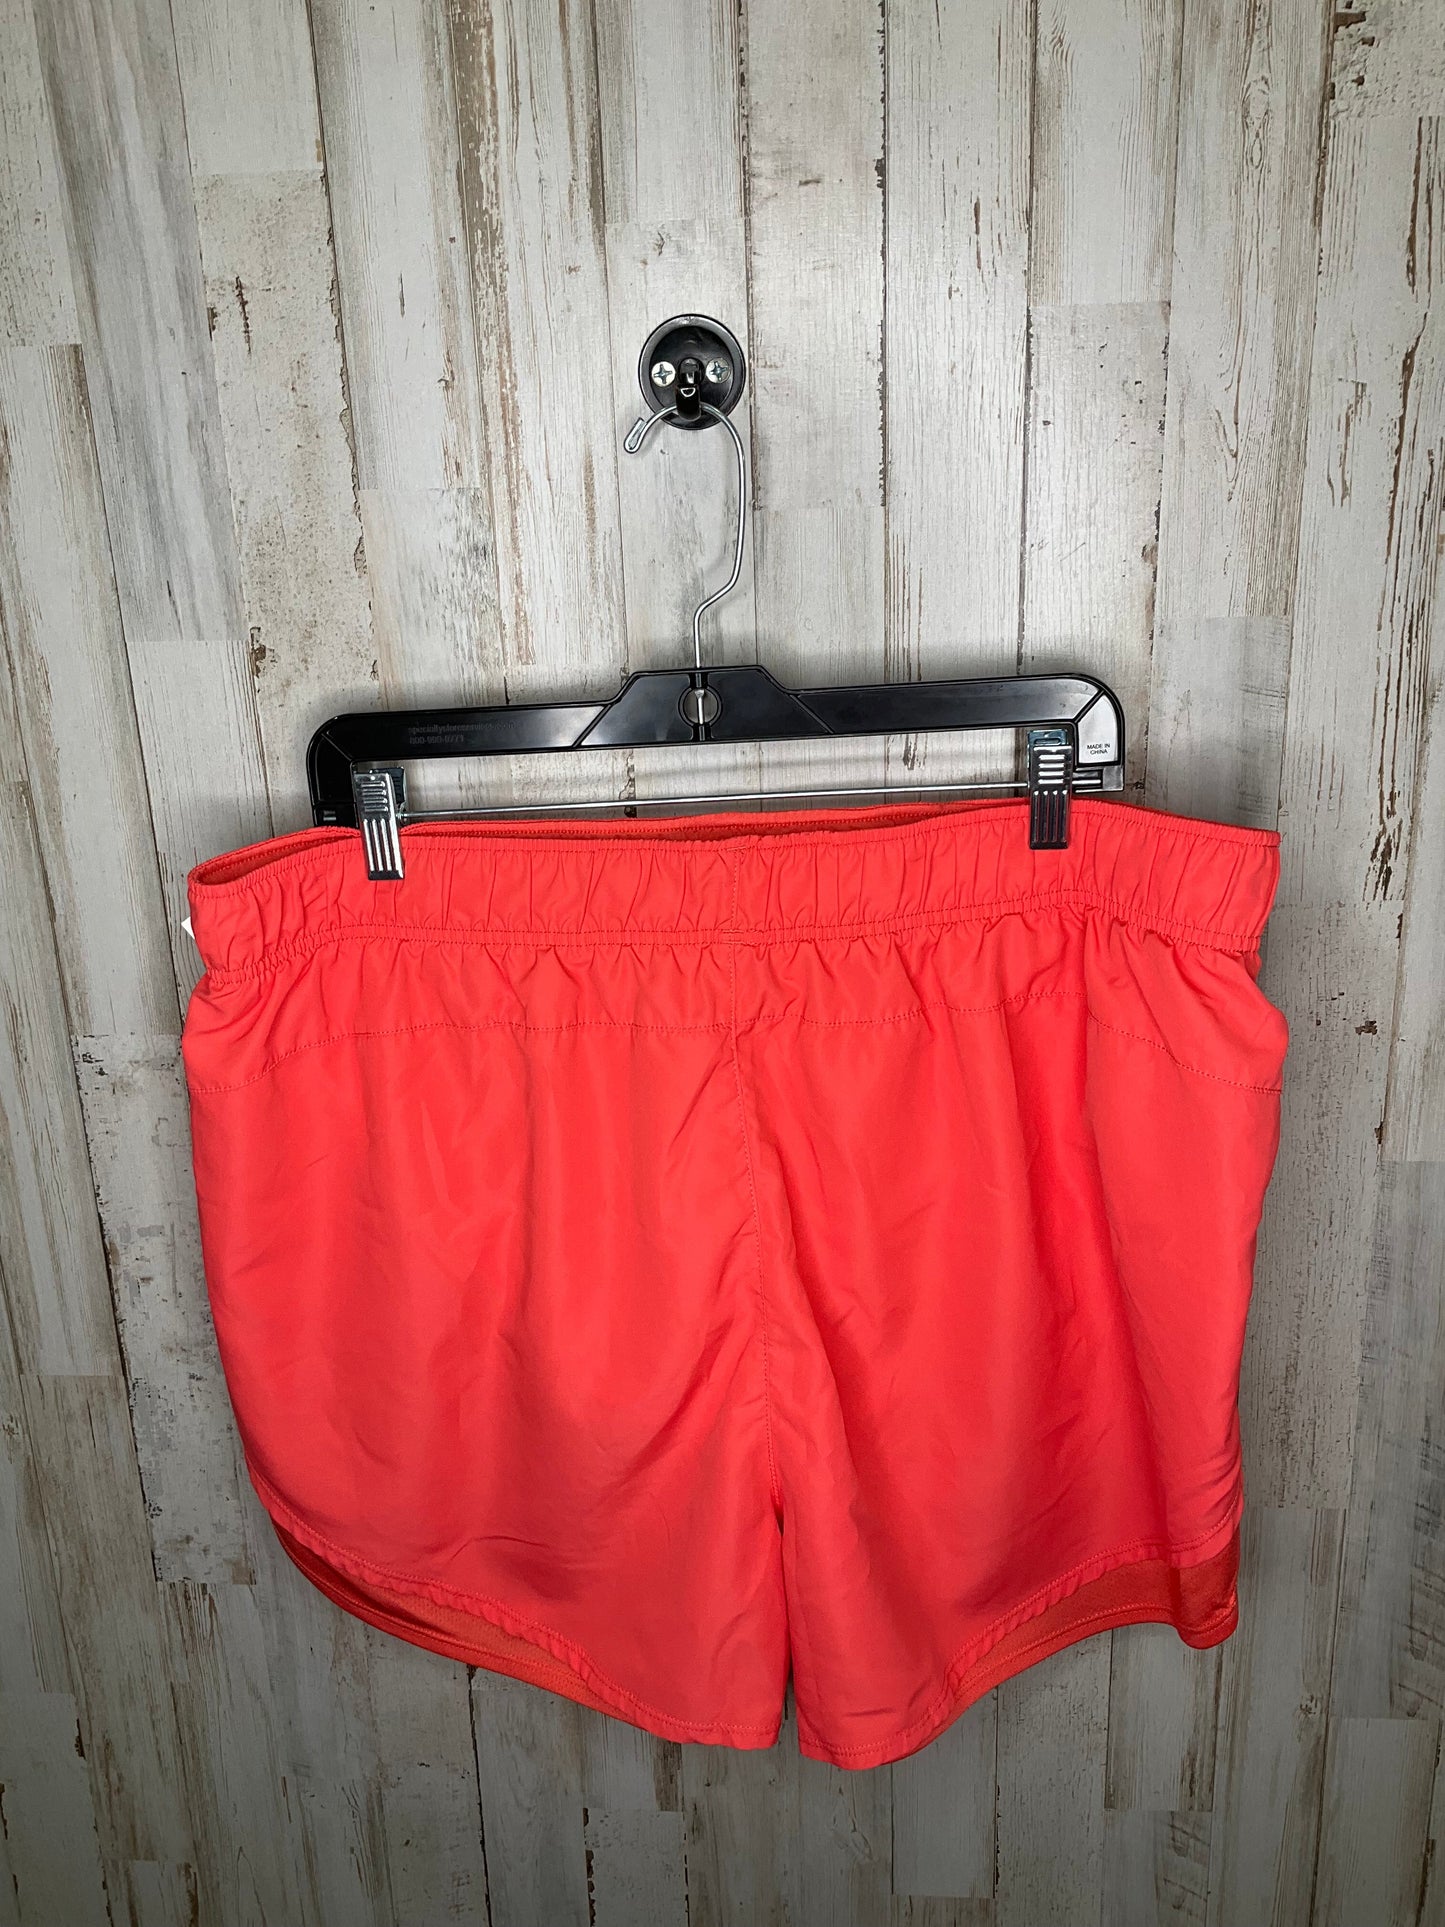 Orange Athletic Shorts Athletic Works, Size 3x